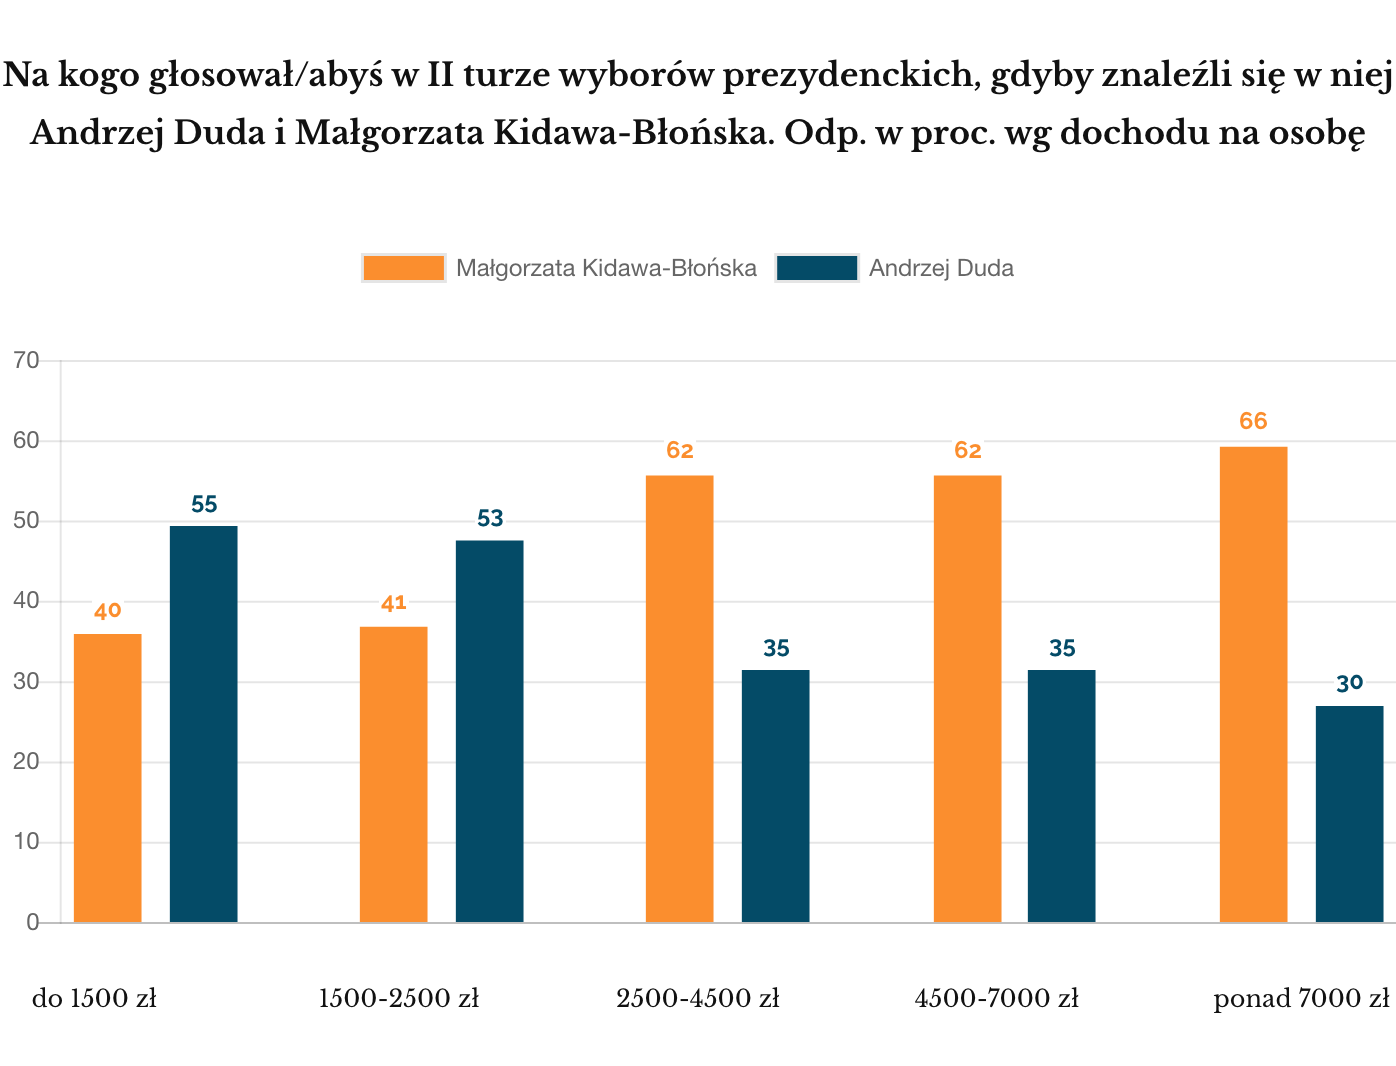 Ipsos luty 2020 profile Dudy i Kidawy, grupy dochodów